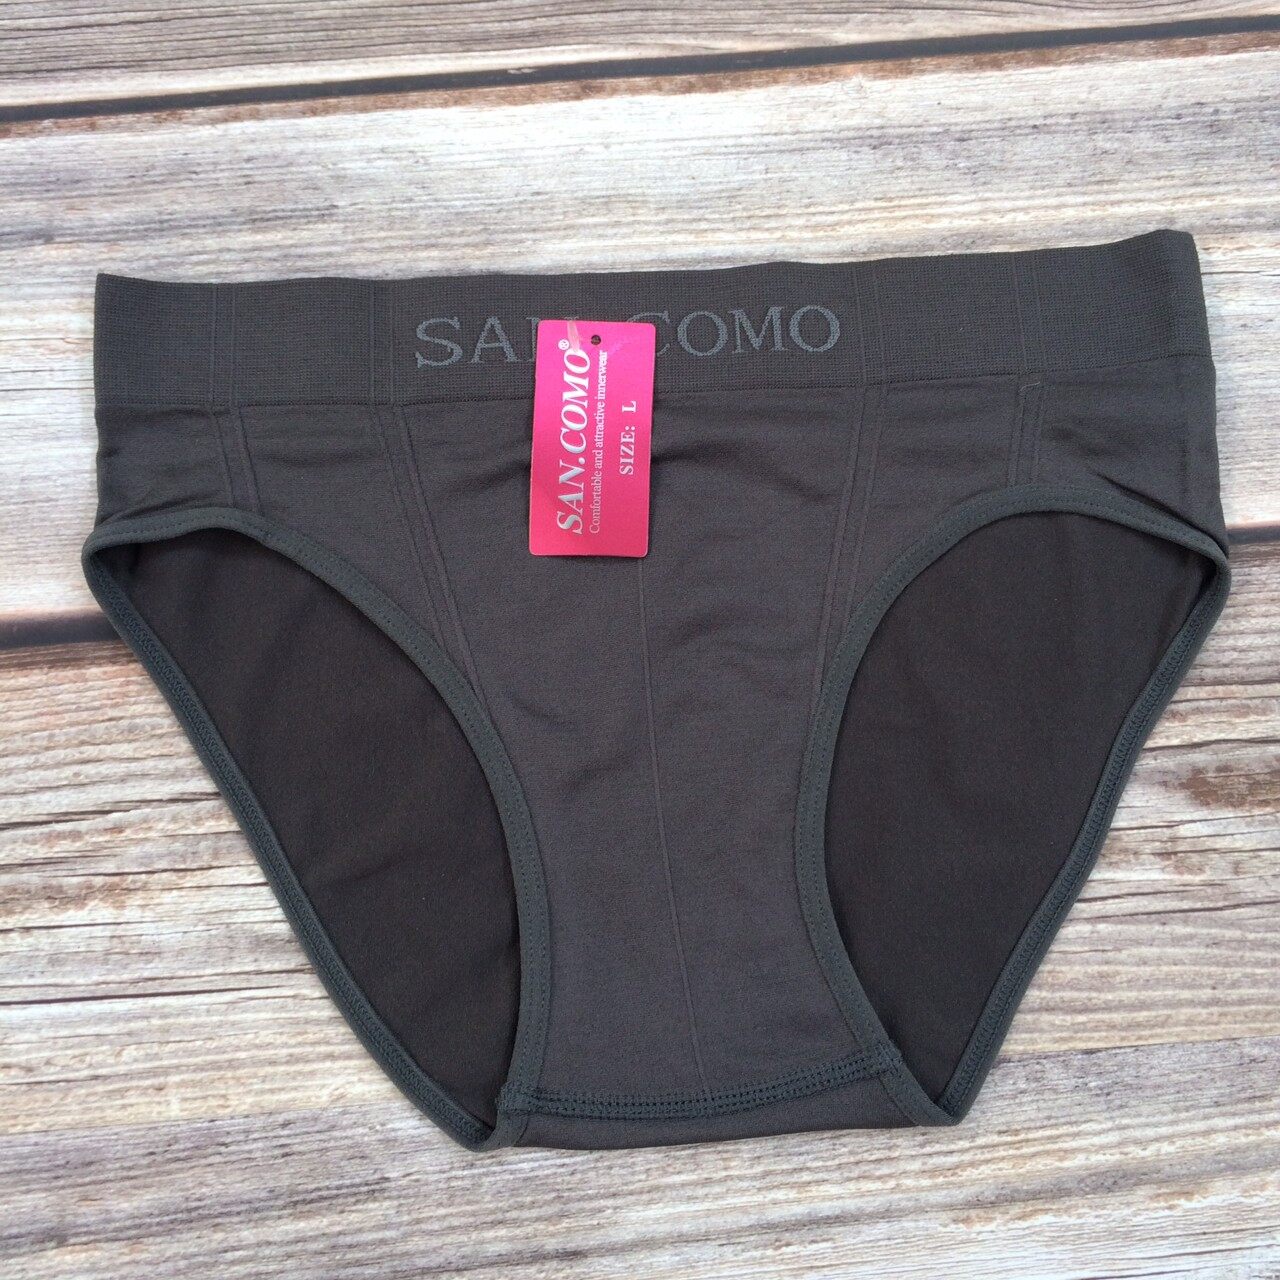 845 กางเกงชั้นในผู้ชาย SAN COMO กางเกงในชาย กางเกงในตัวใหญ่ กางเกงในขาสั้น กางเกงบ๊อกเซอร์ สีพื้น ผ้านิ่ม ราคาถูก ดี